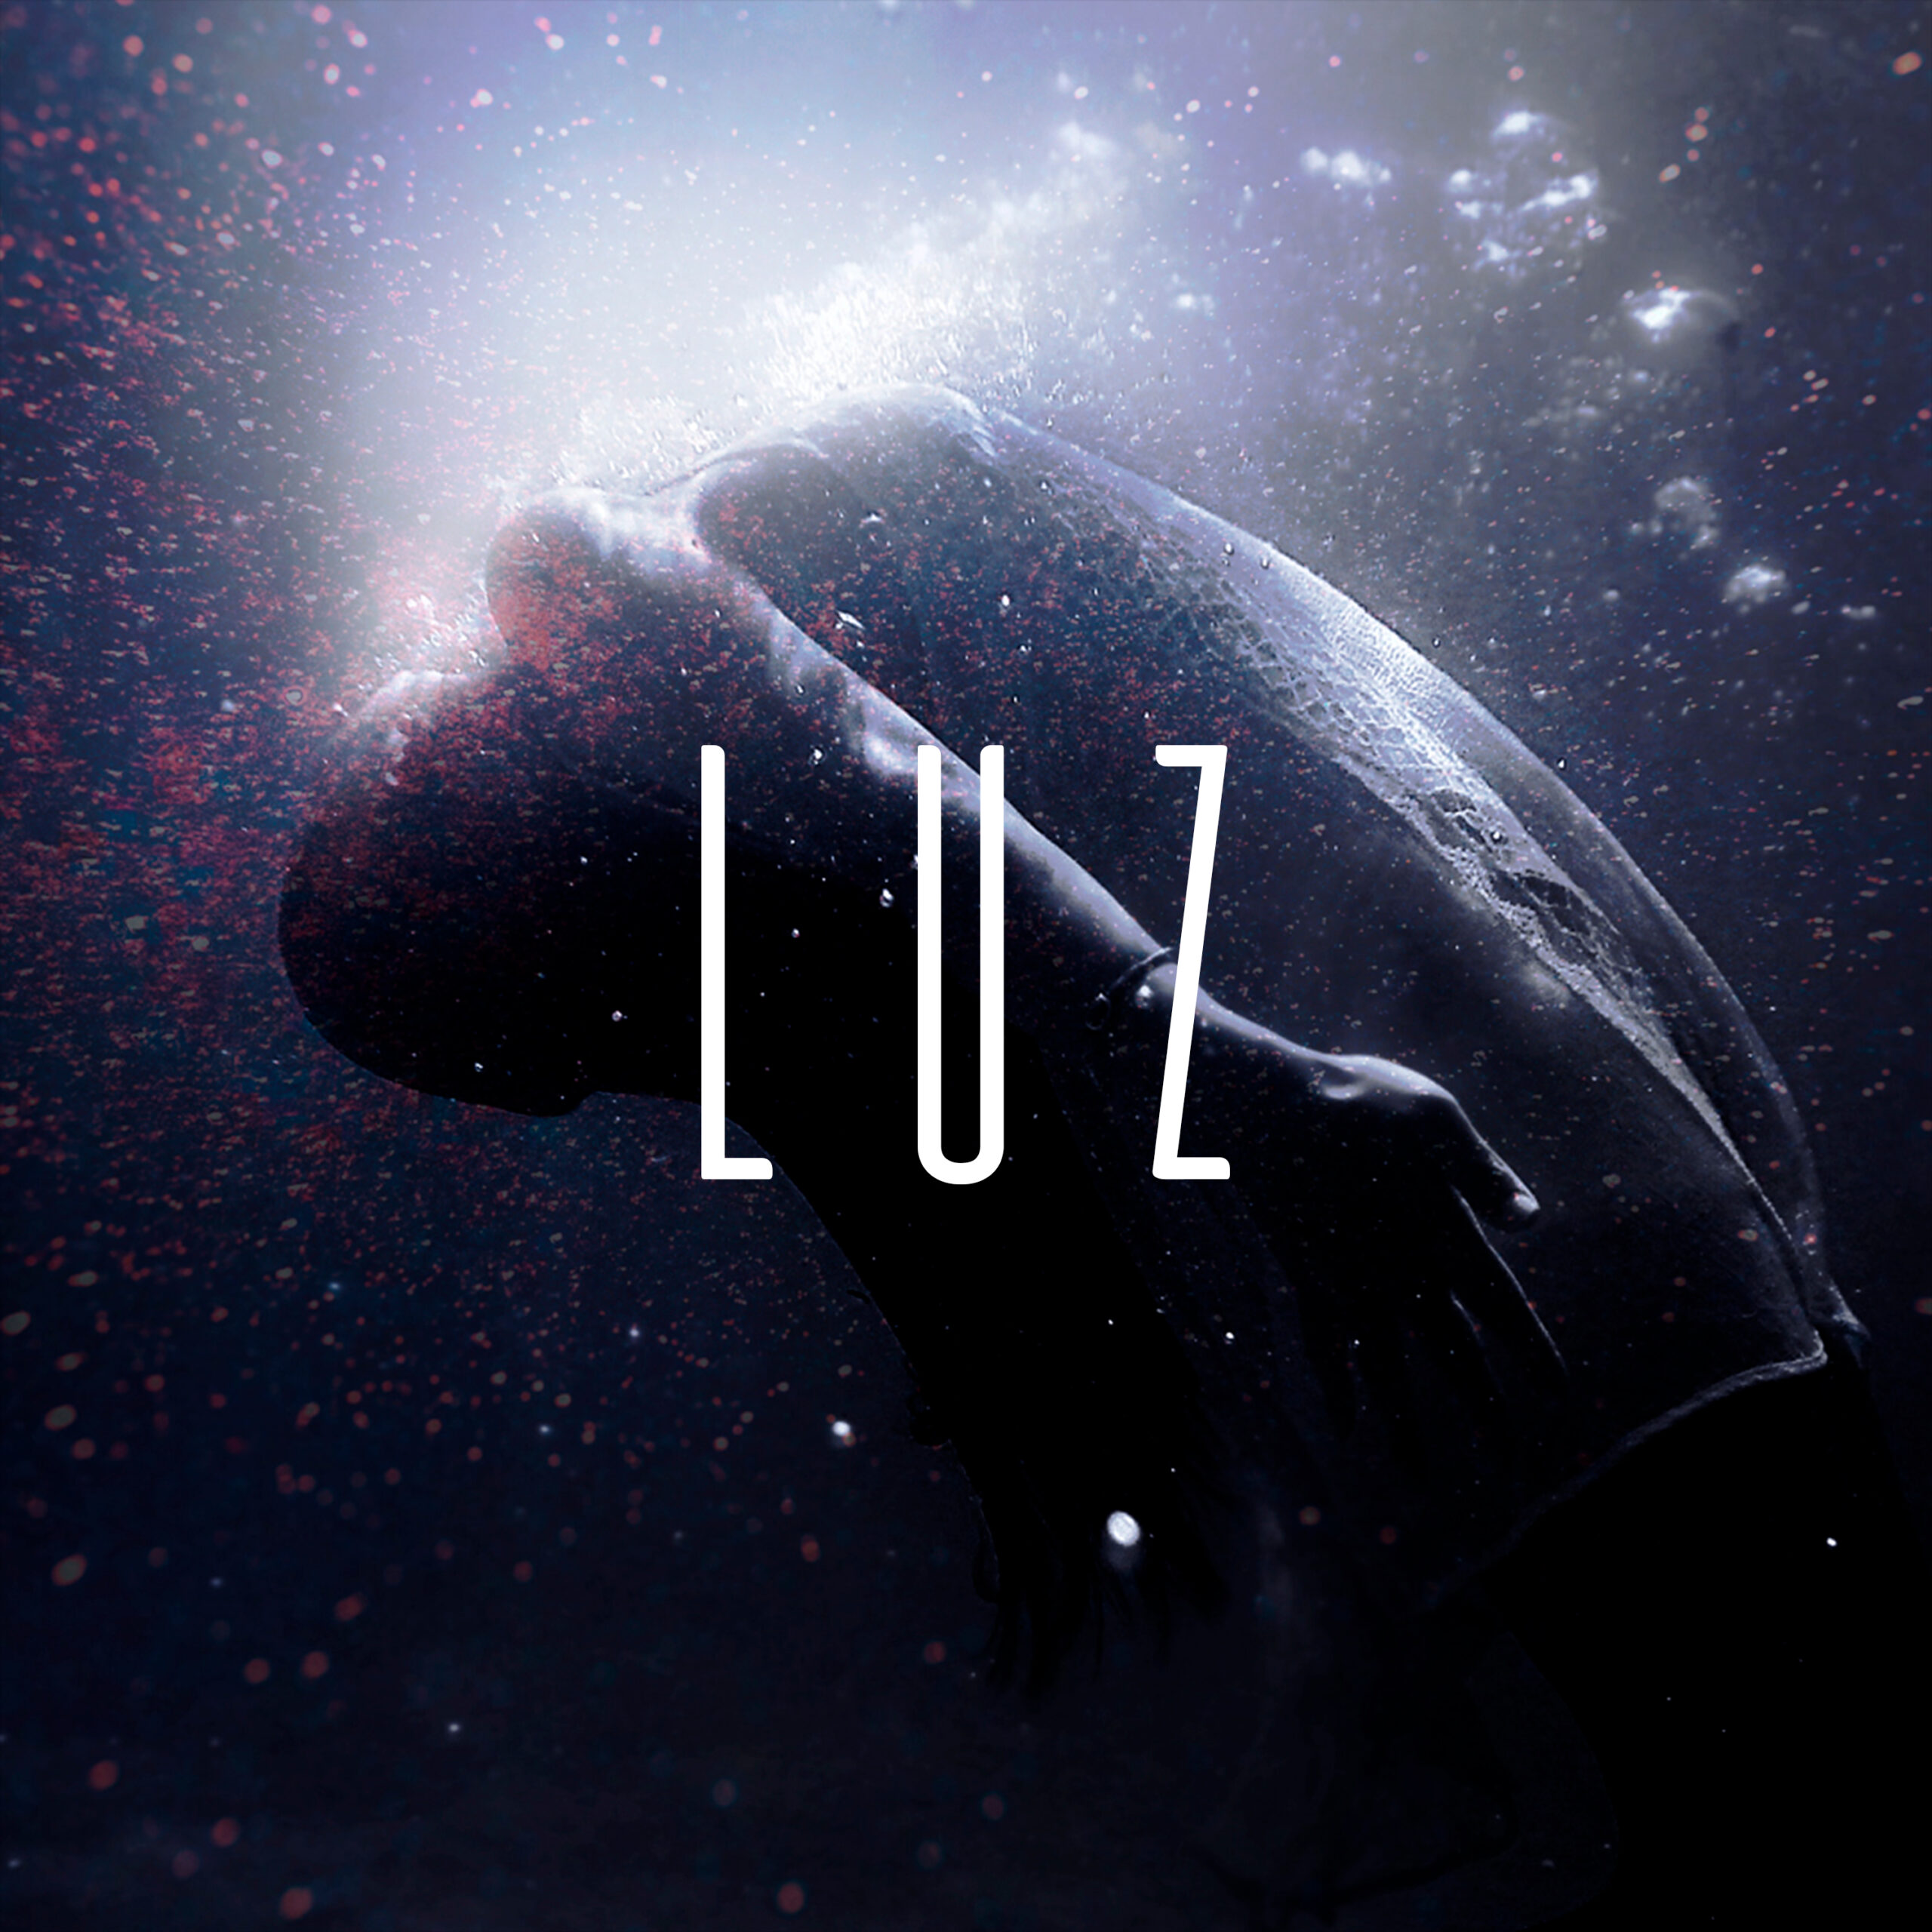  Escucha ‘Luz’, el nuevo sencillo de Pargo